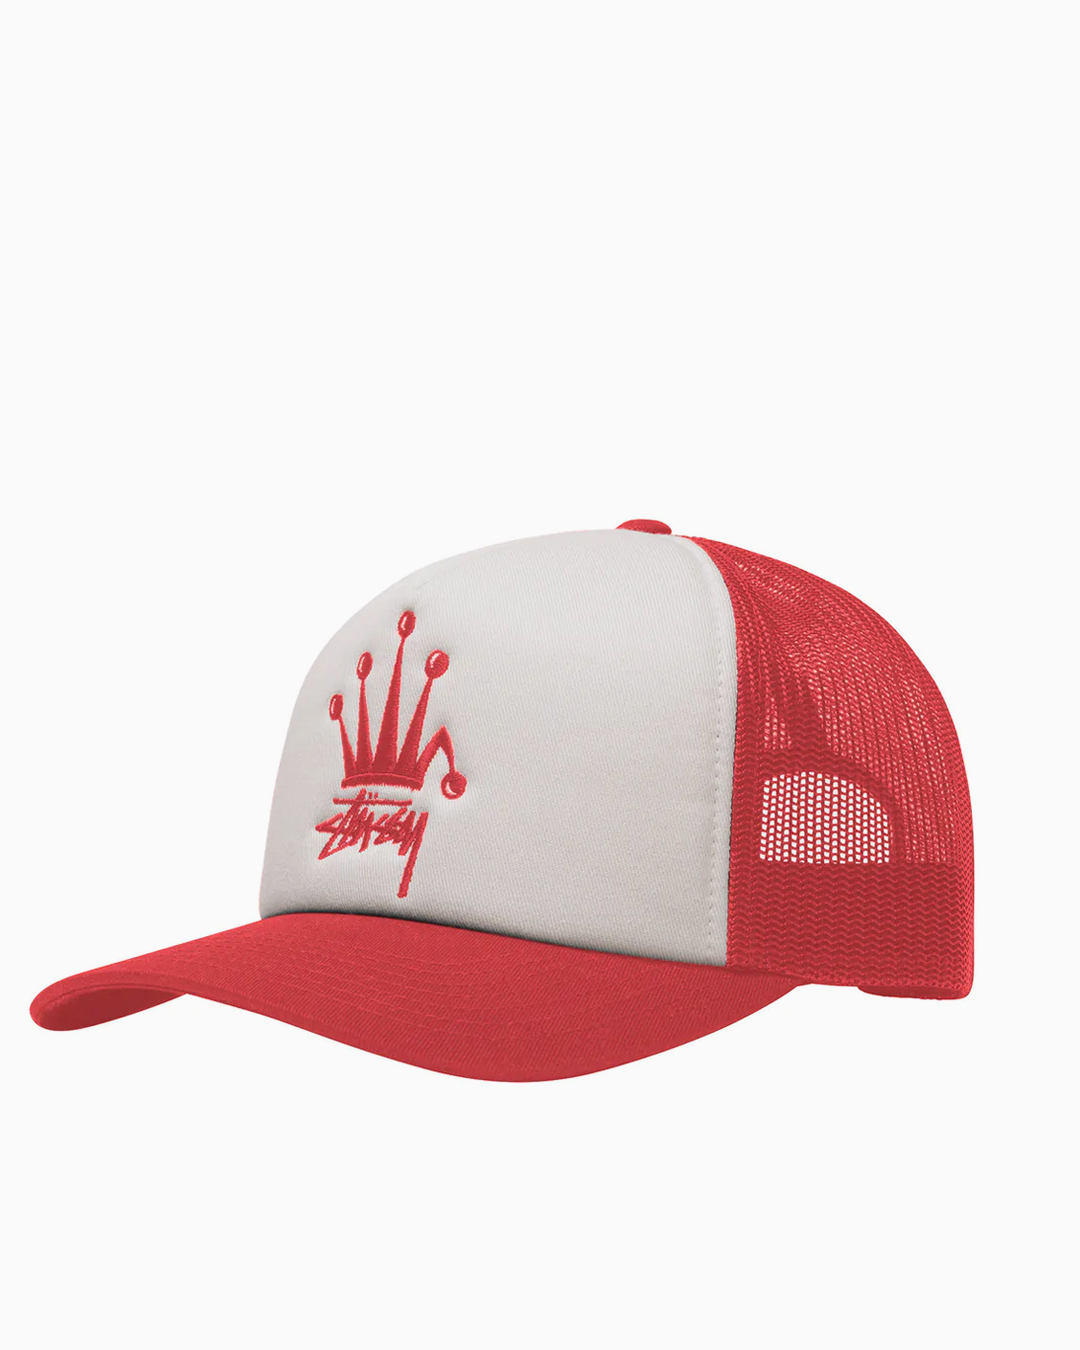 Crown Stock Trucker Cap Stussy Headwear Caps Red